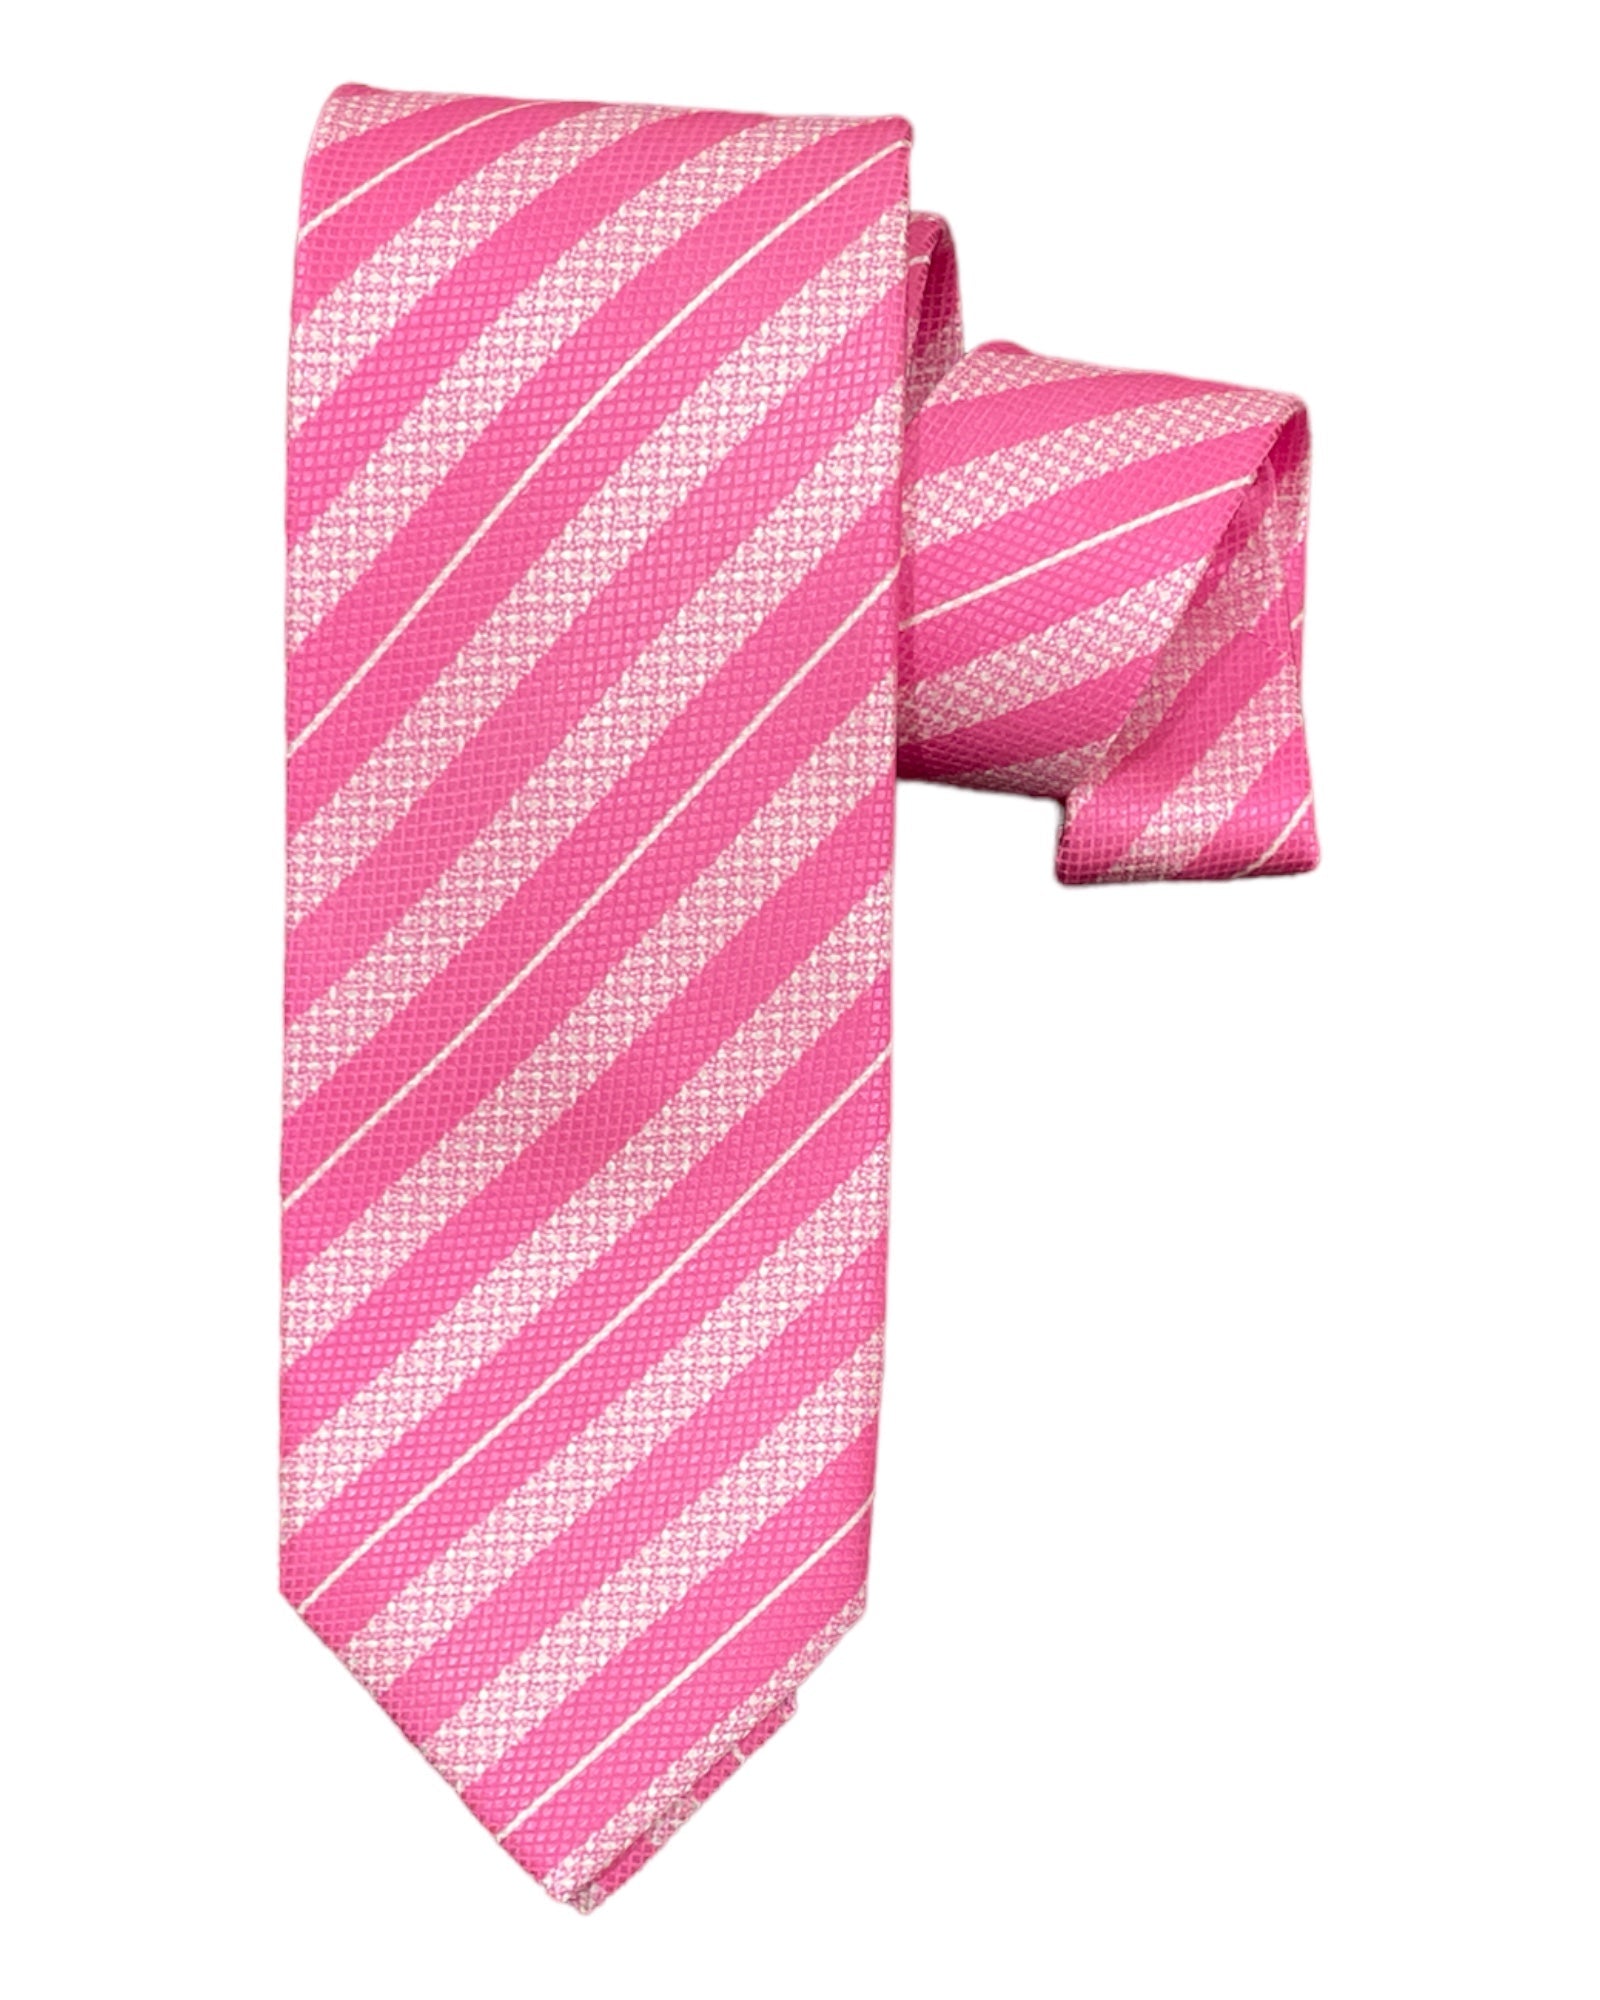 Seven-Fold Regimental Stripe Silk Tie - Pink TIES